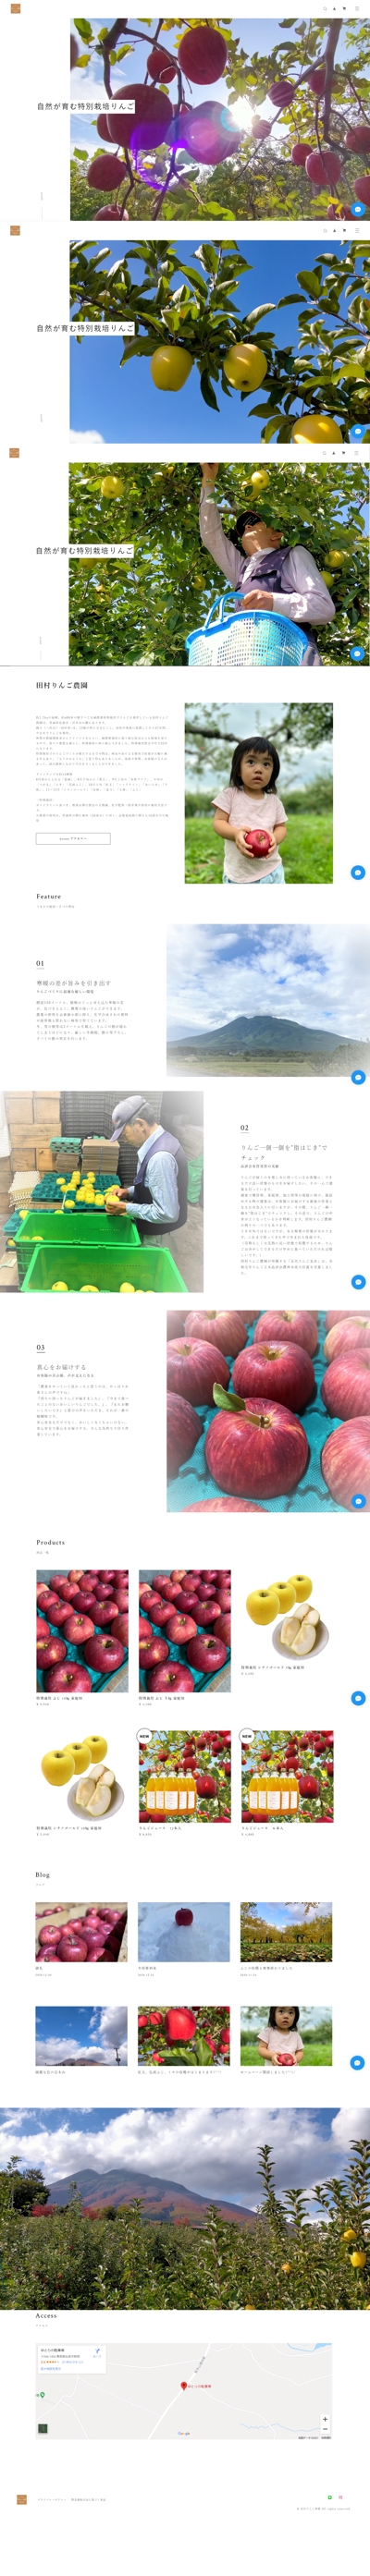 田村りんご農園さんHP